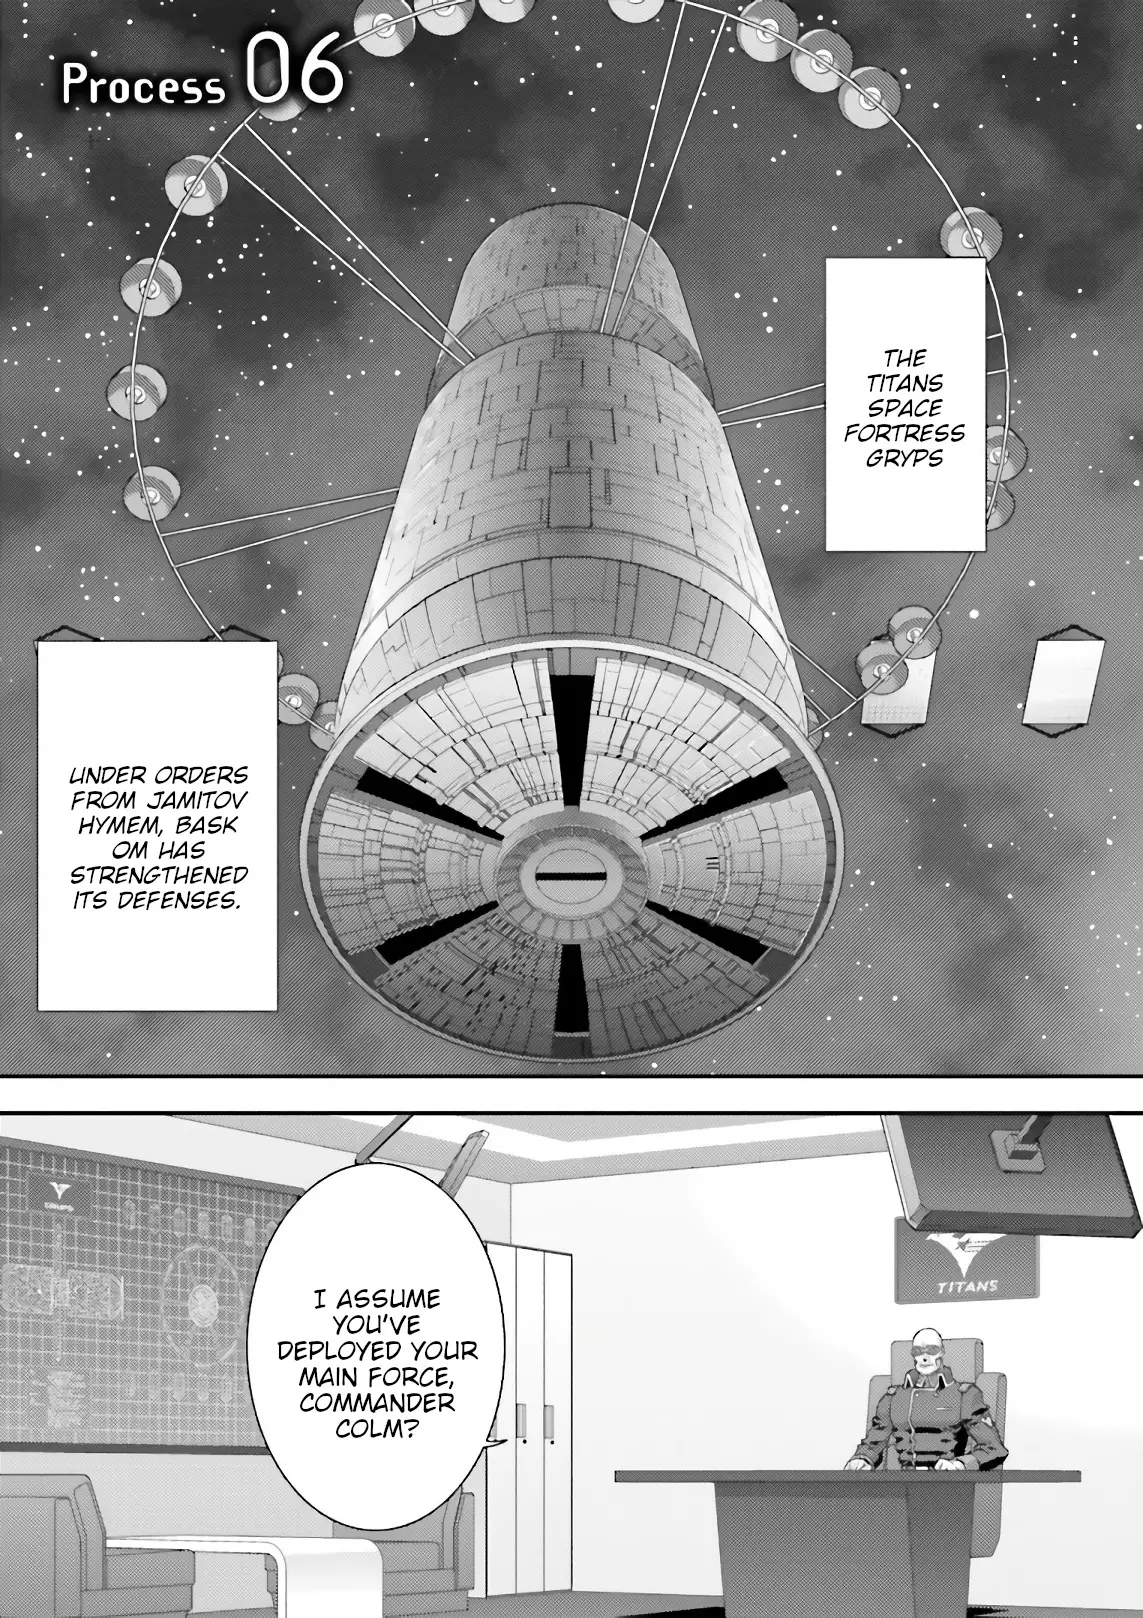 Mobile Suit Zeta Gundam - Define - 55 page 1-9085fcc8